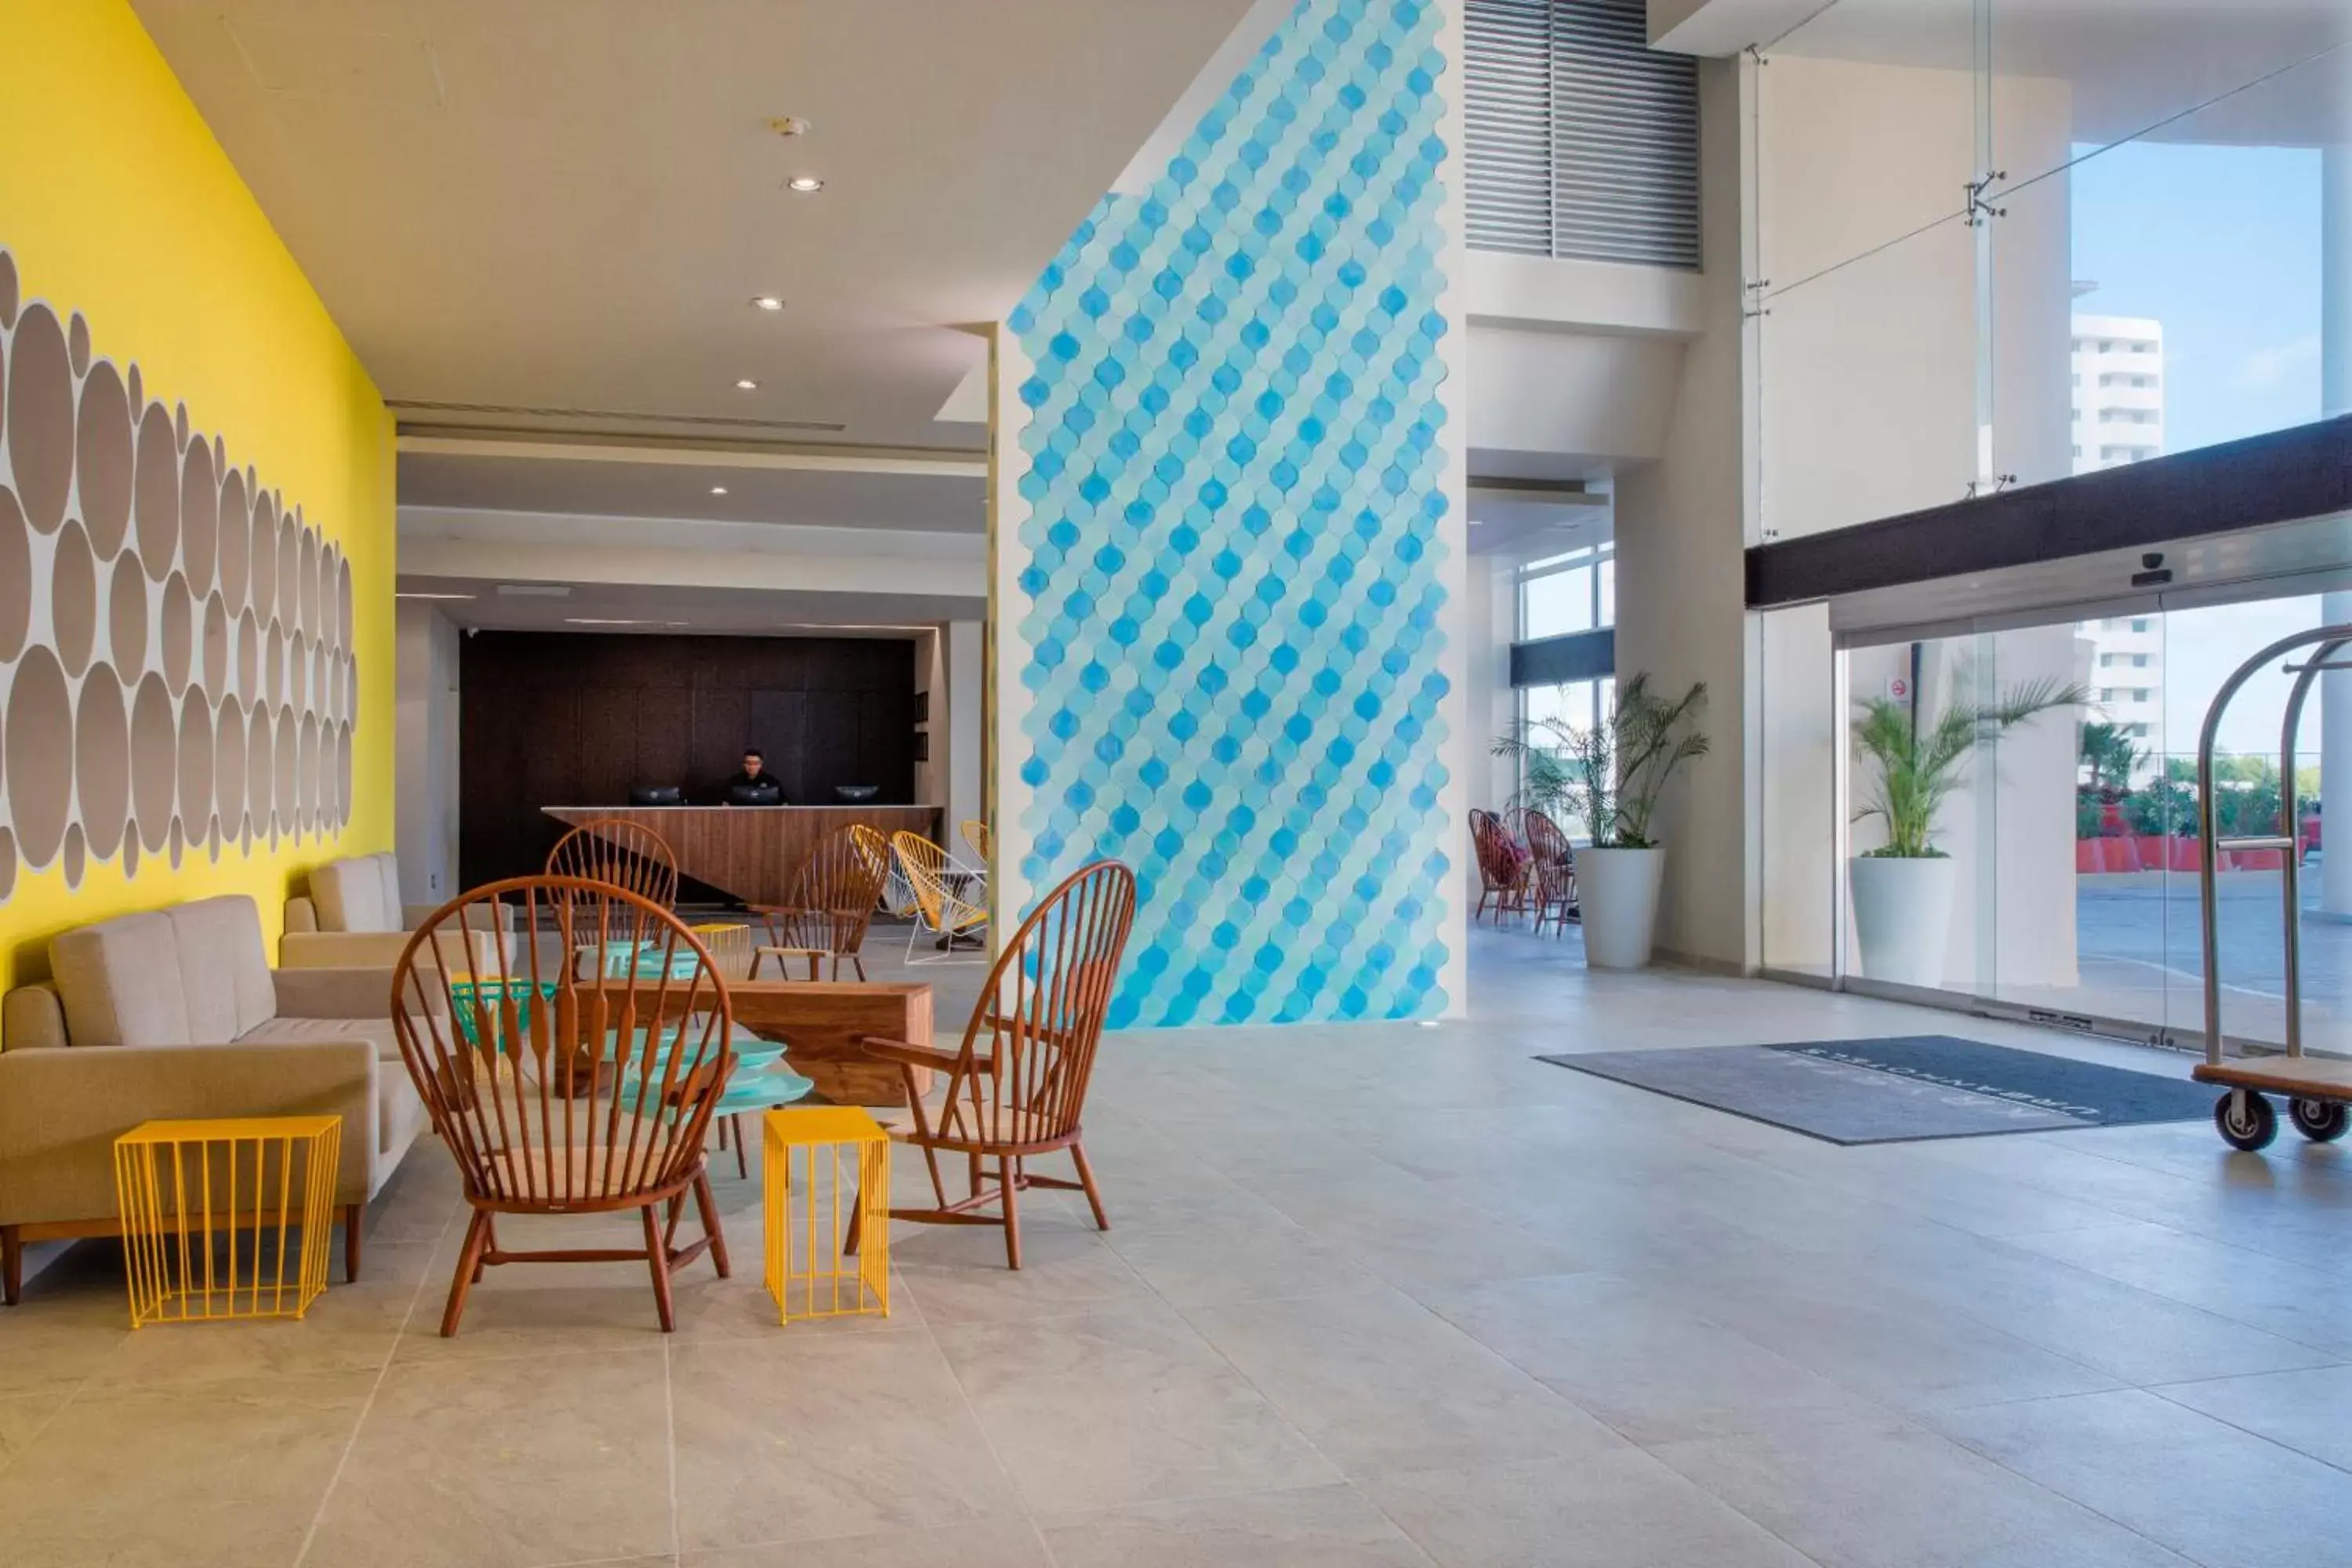 Lobby or reception in Krystal Urban Cancun & Beach Club